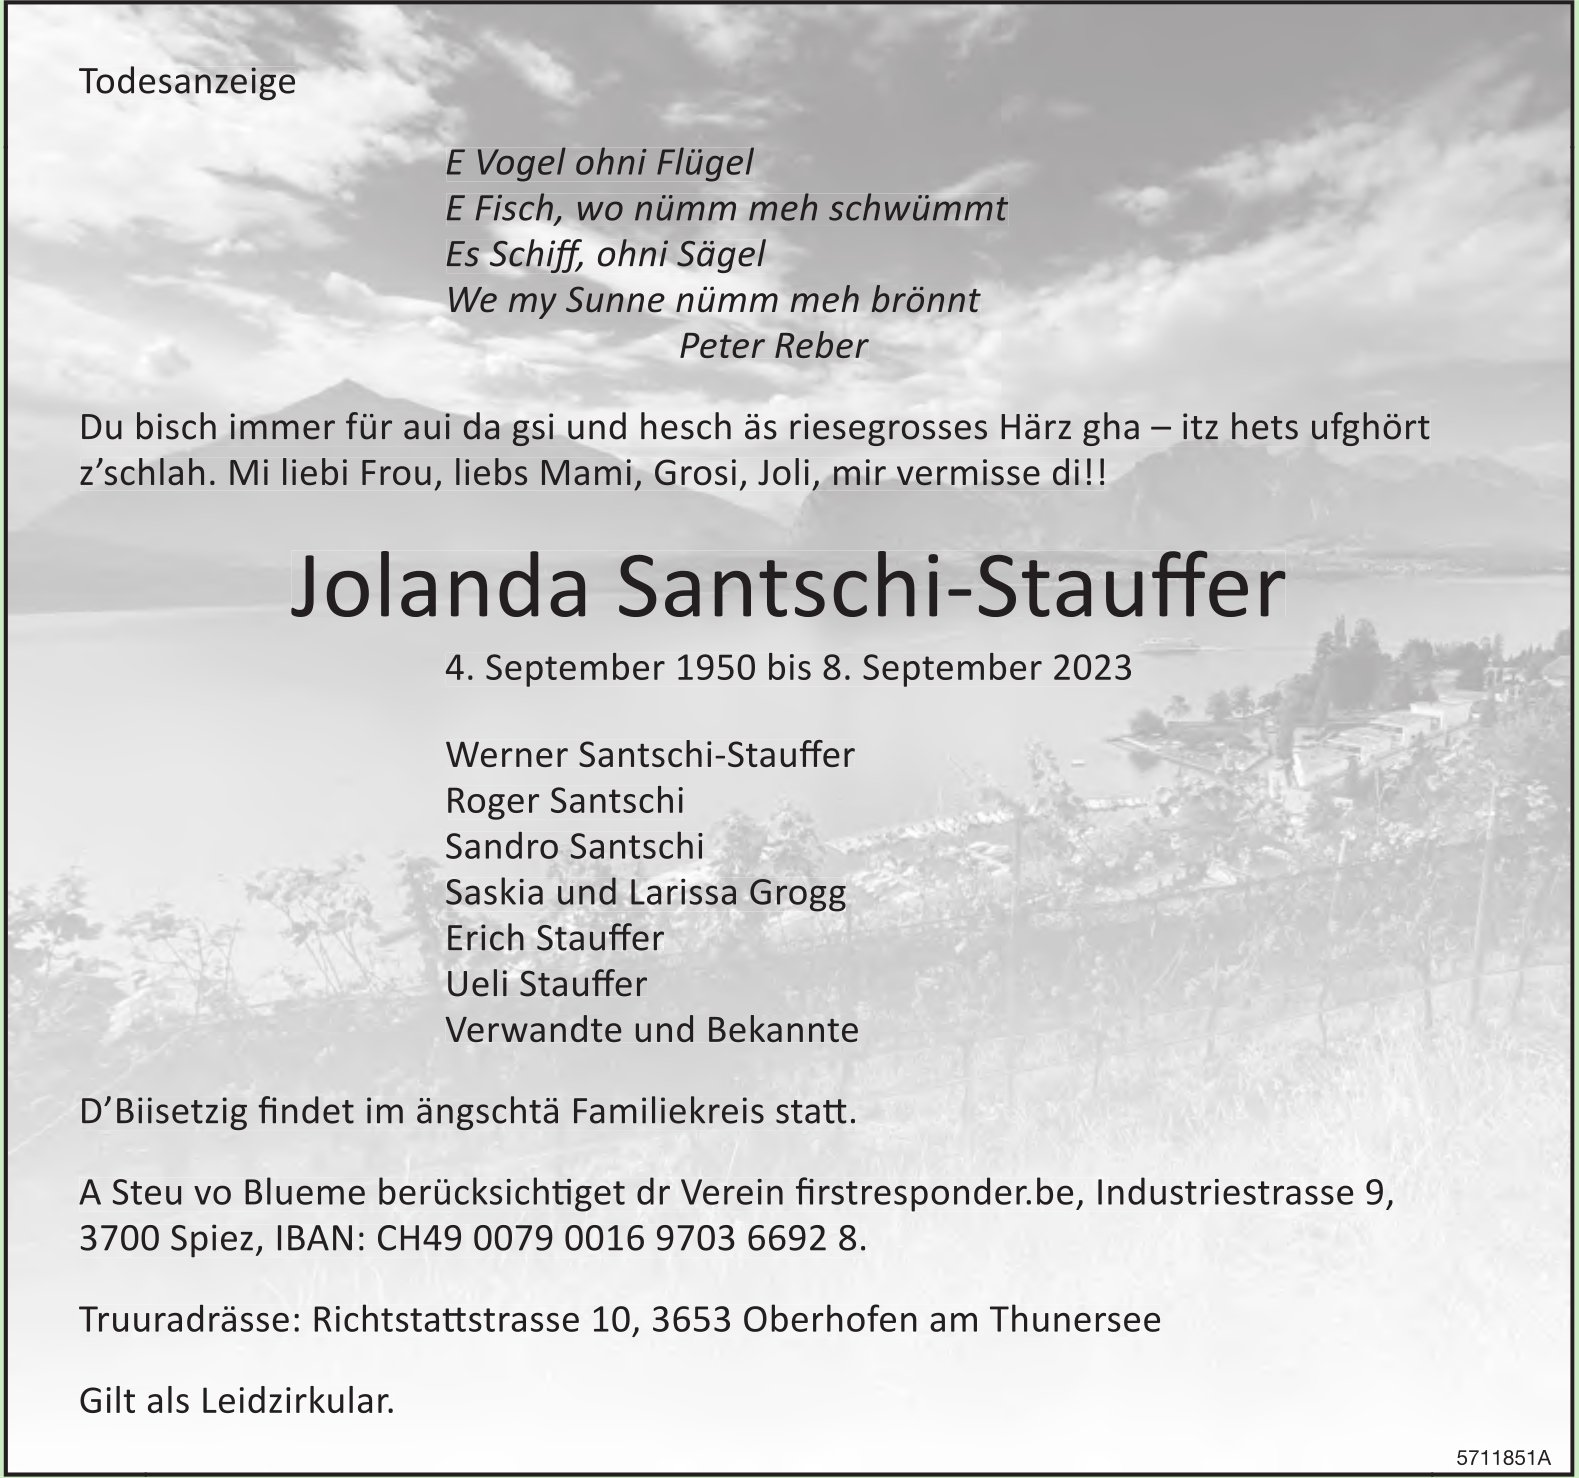 Santschi-Stauffer Jolanda, September 2023 / TA